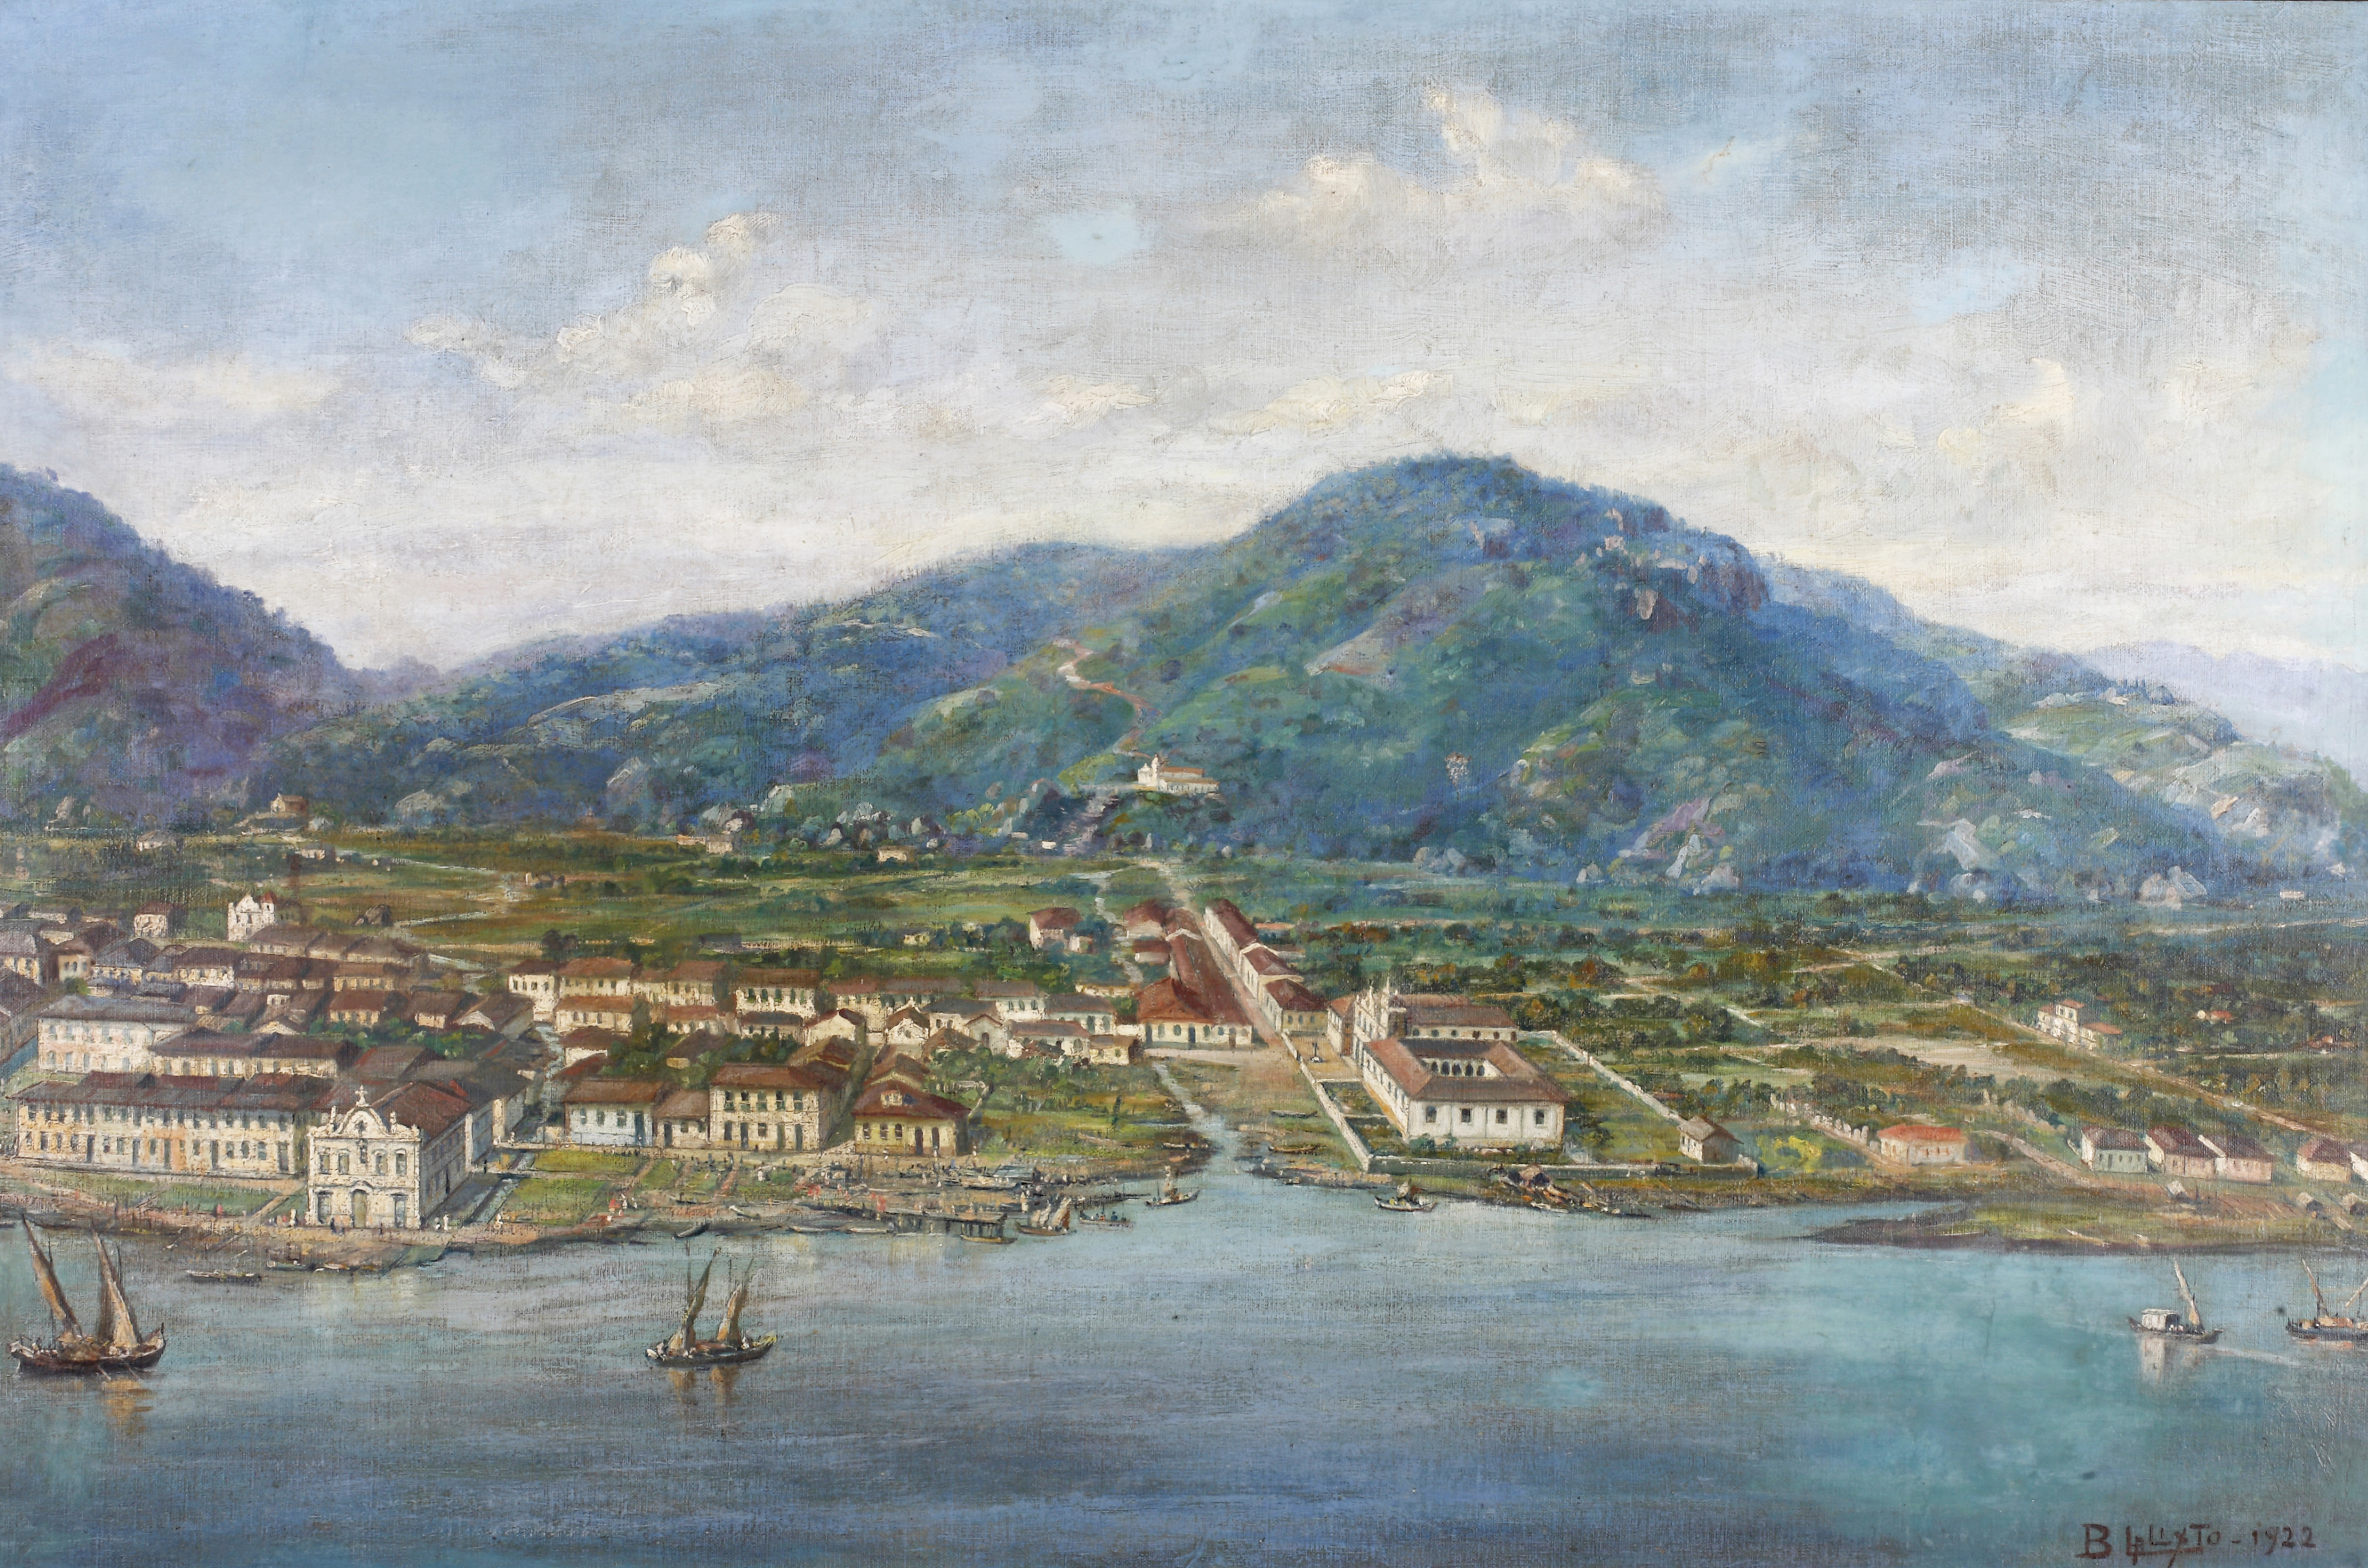 Santos em 1822, com seus 4.781 habitantes, no ano da Independência.